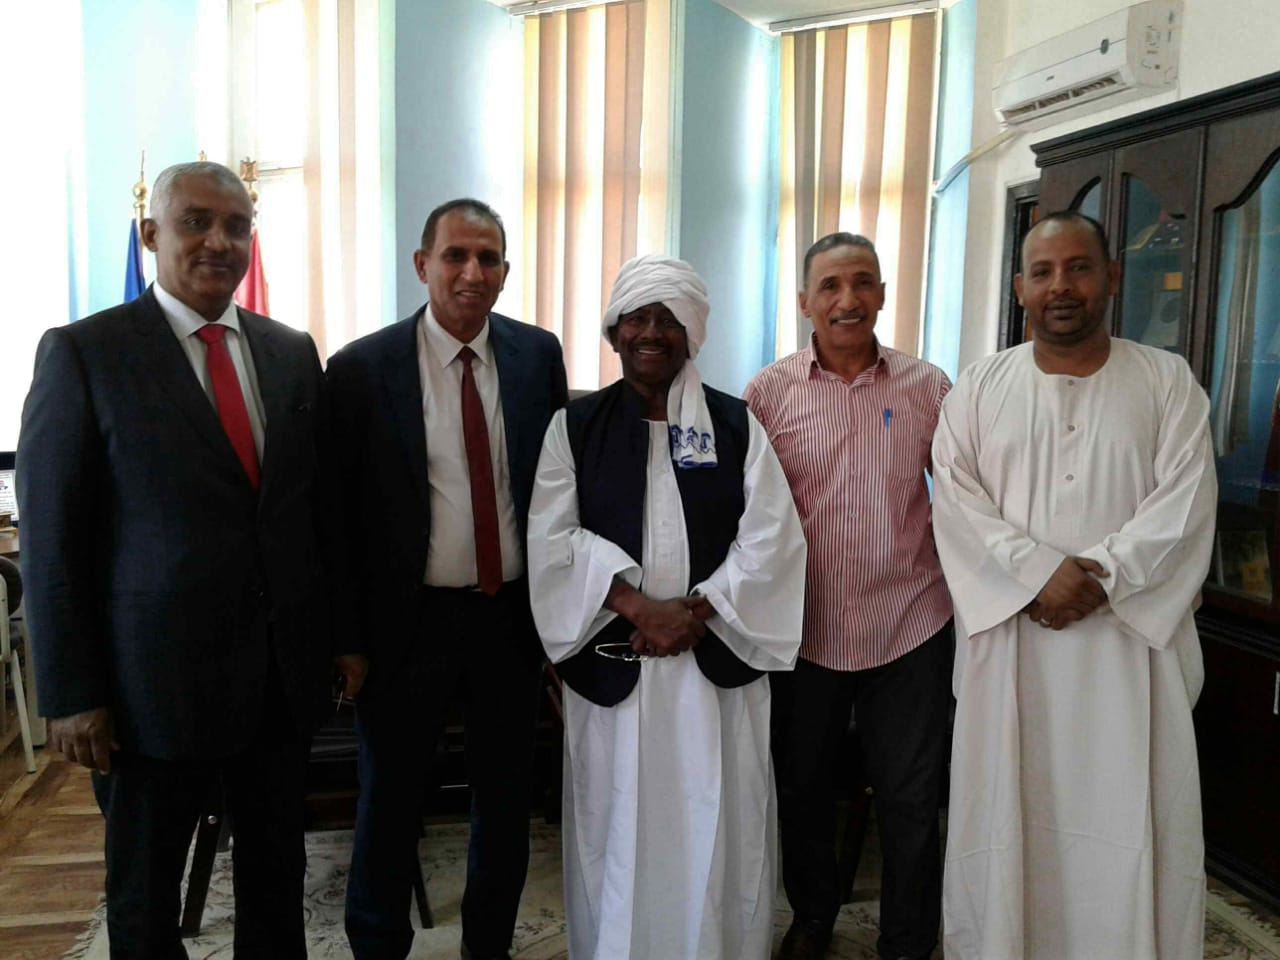   فرقة «البعيو » السودانية تشارك في أسبوع الجامعات الأفريقية بجامعة أسوان